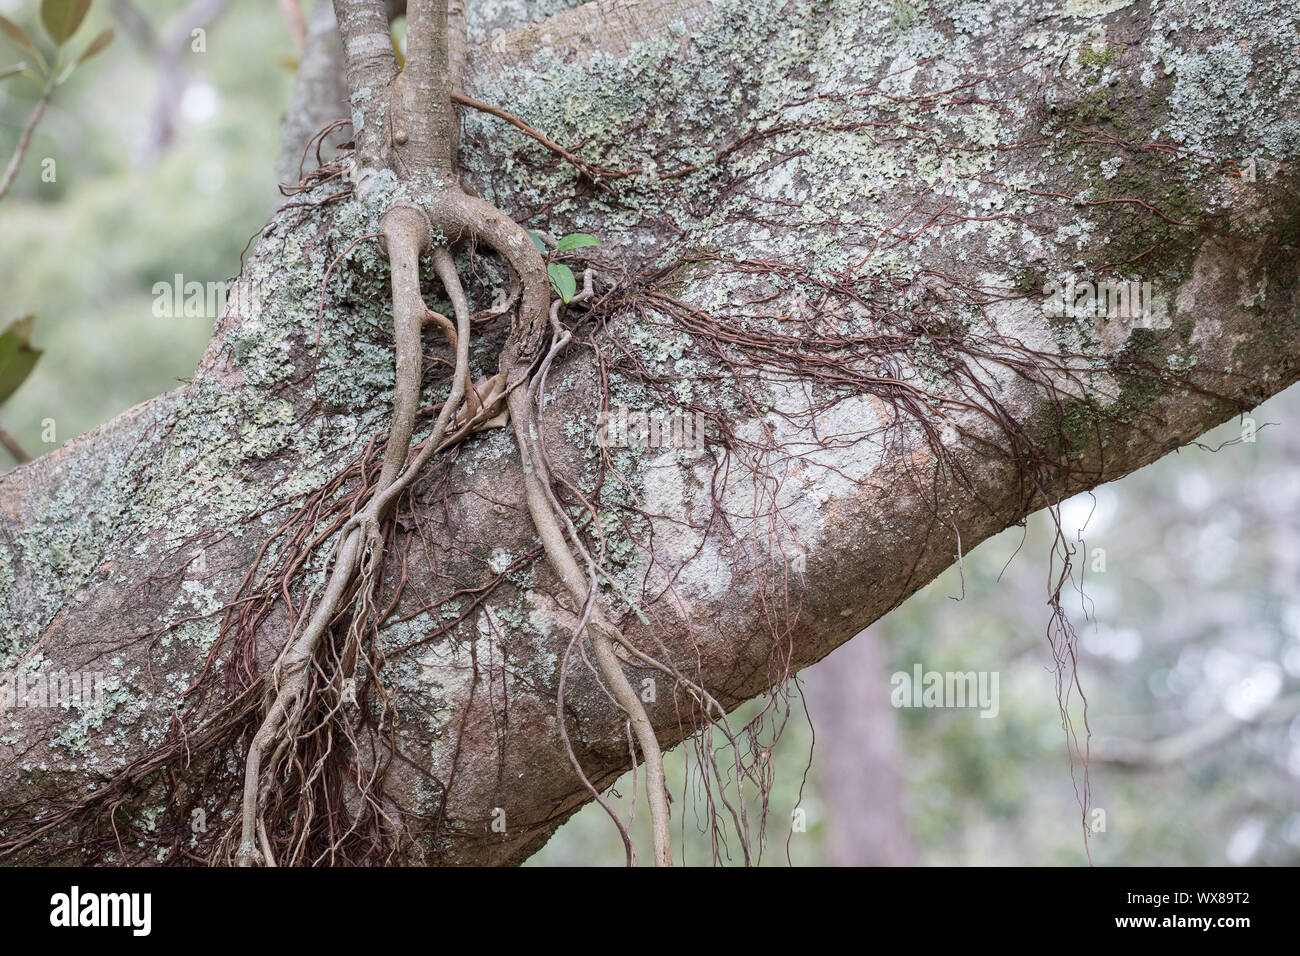 Port Jackson Feigenbaum Wurzeln wachsen auf Baumstamm Stockfoto